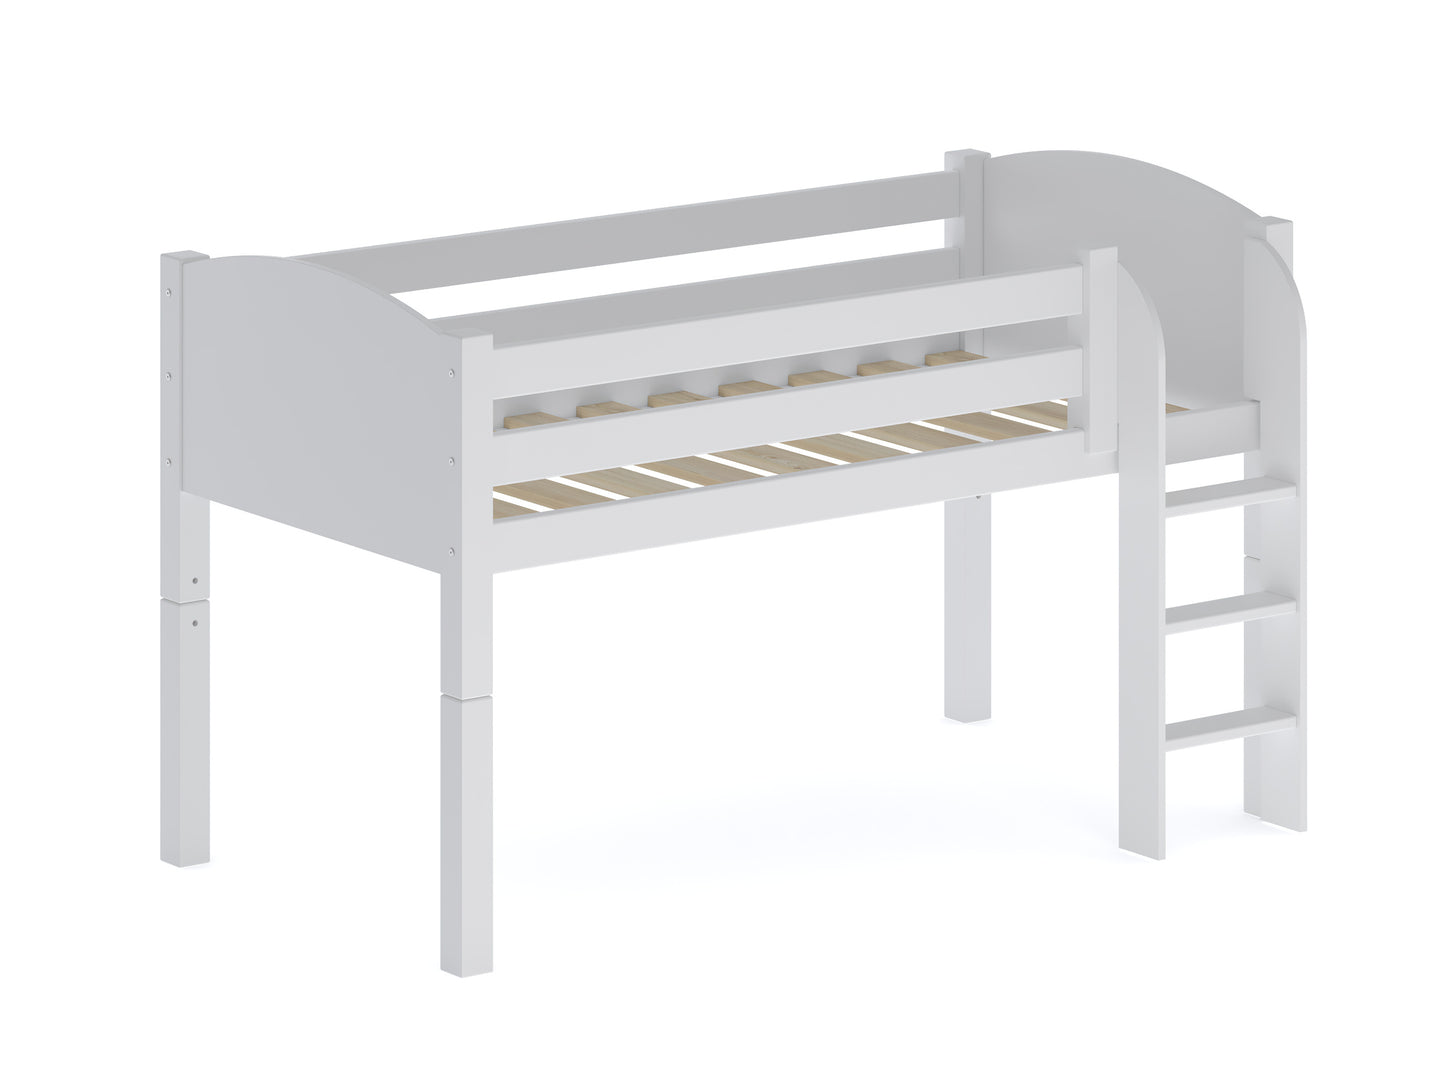 Midsleeper Cabin Bed with Slideaway Desk, Cupboard & Shelf